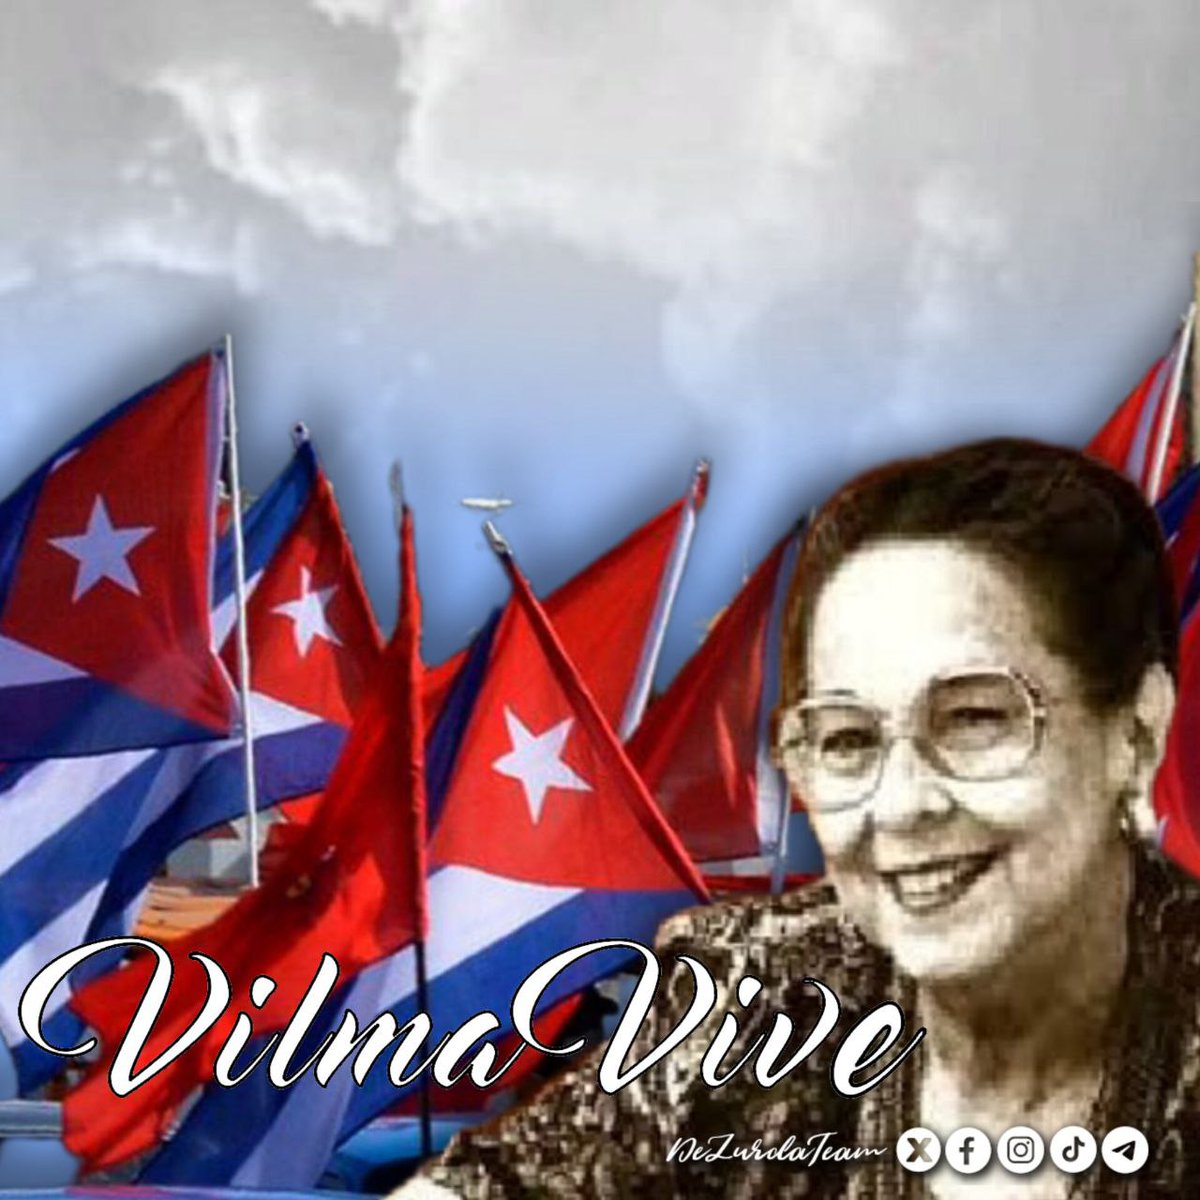 #🦀 “Con emoción y optimismo escuchamos siempre las palabras inteligentes, serenas, revolucionarias y dulces de la compañera Vilma Espín”..!🇨🇺🌻
#Cuba #DeZurdaTeam 
#VilmaPorSiempre 
#MujeresEnRevolución